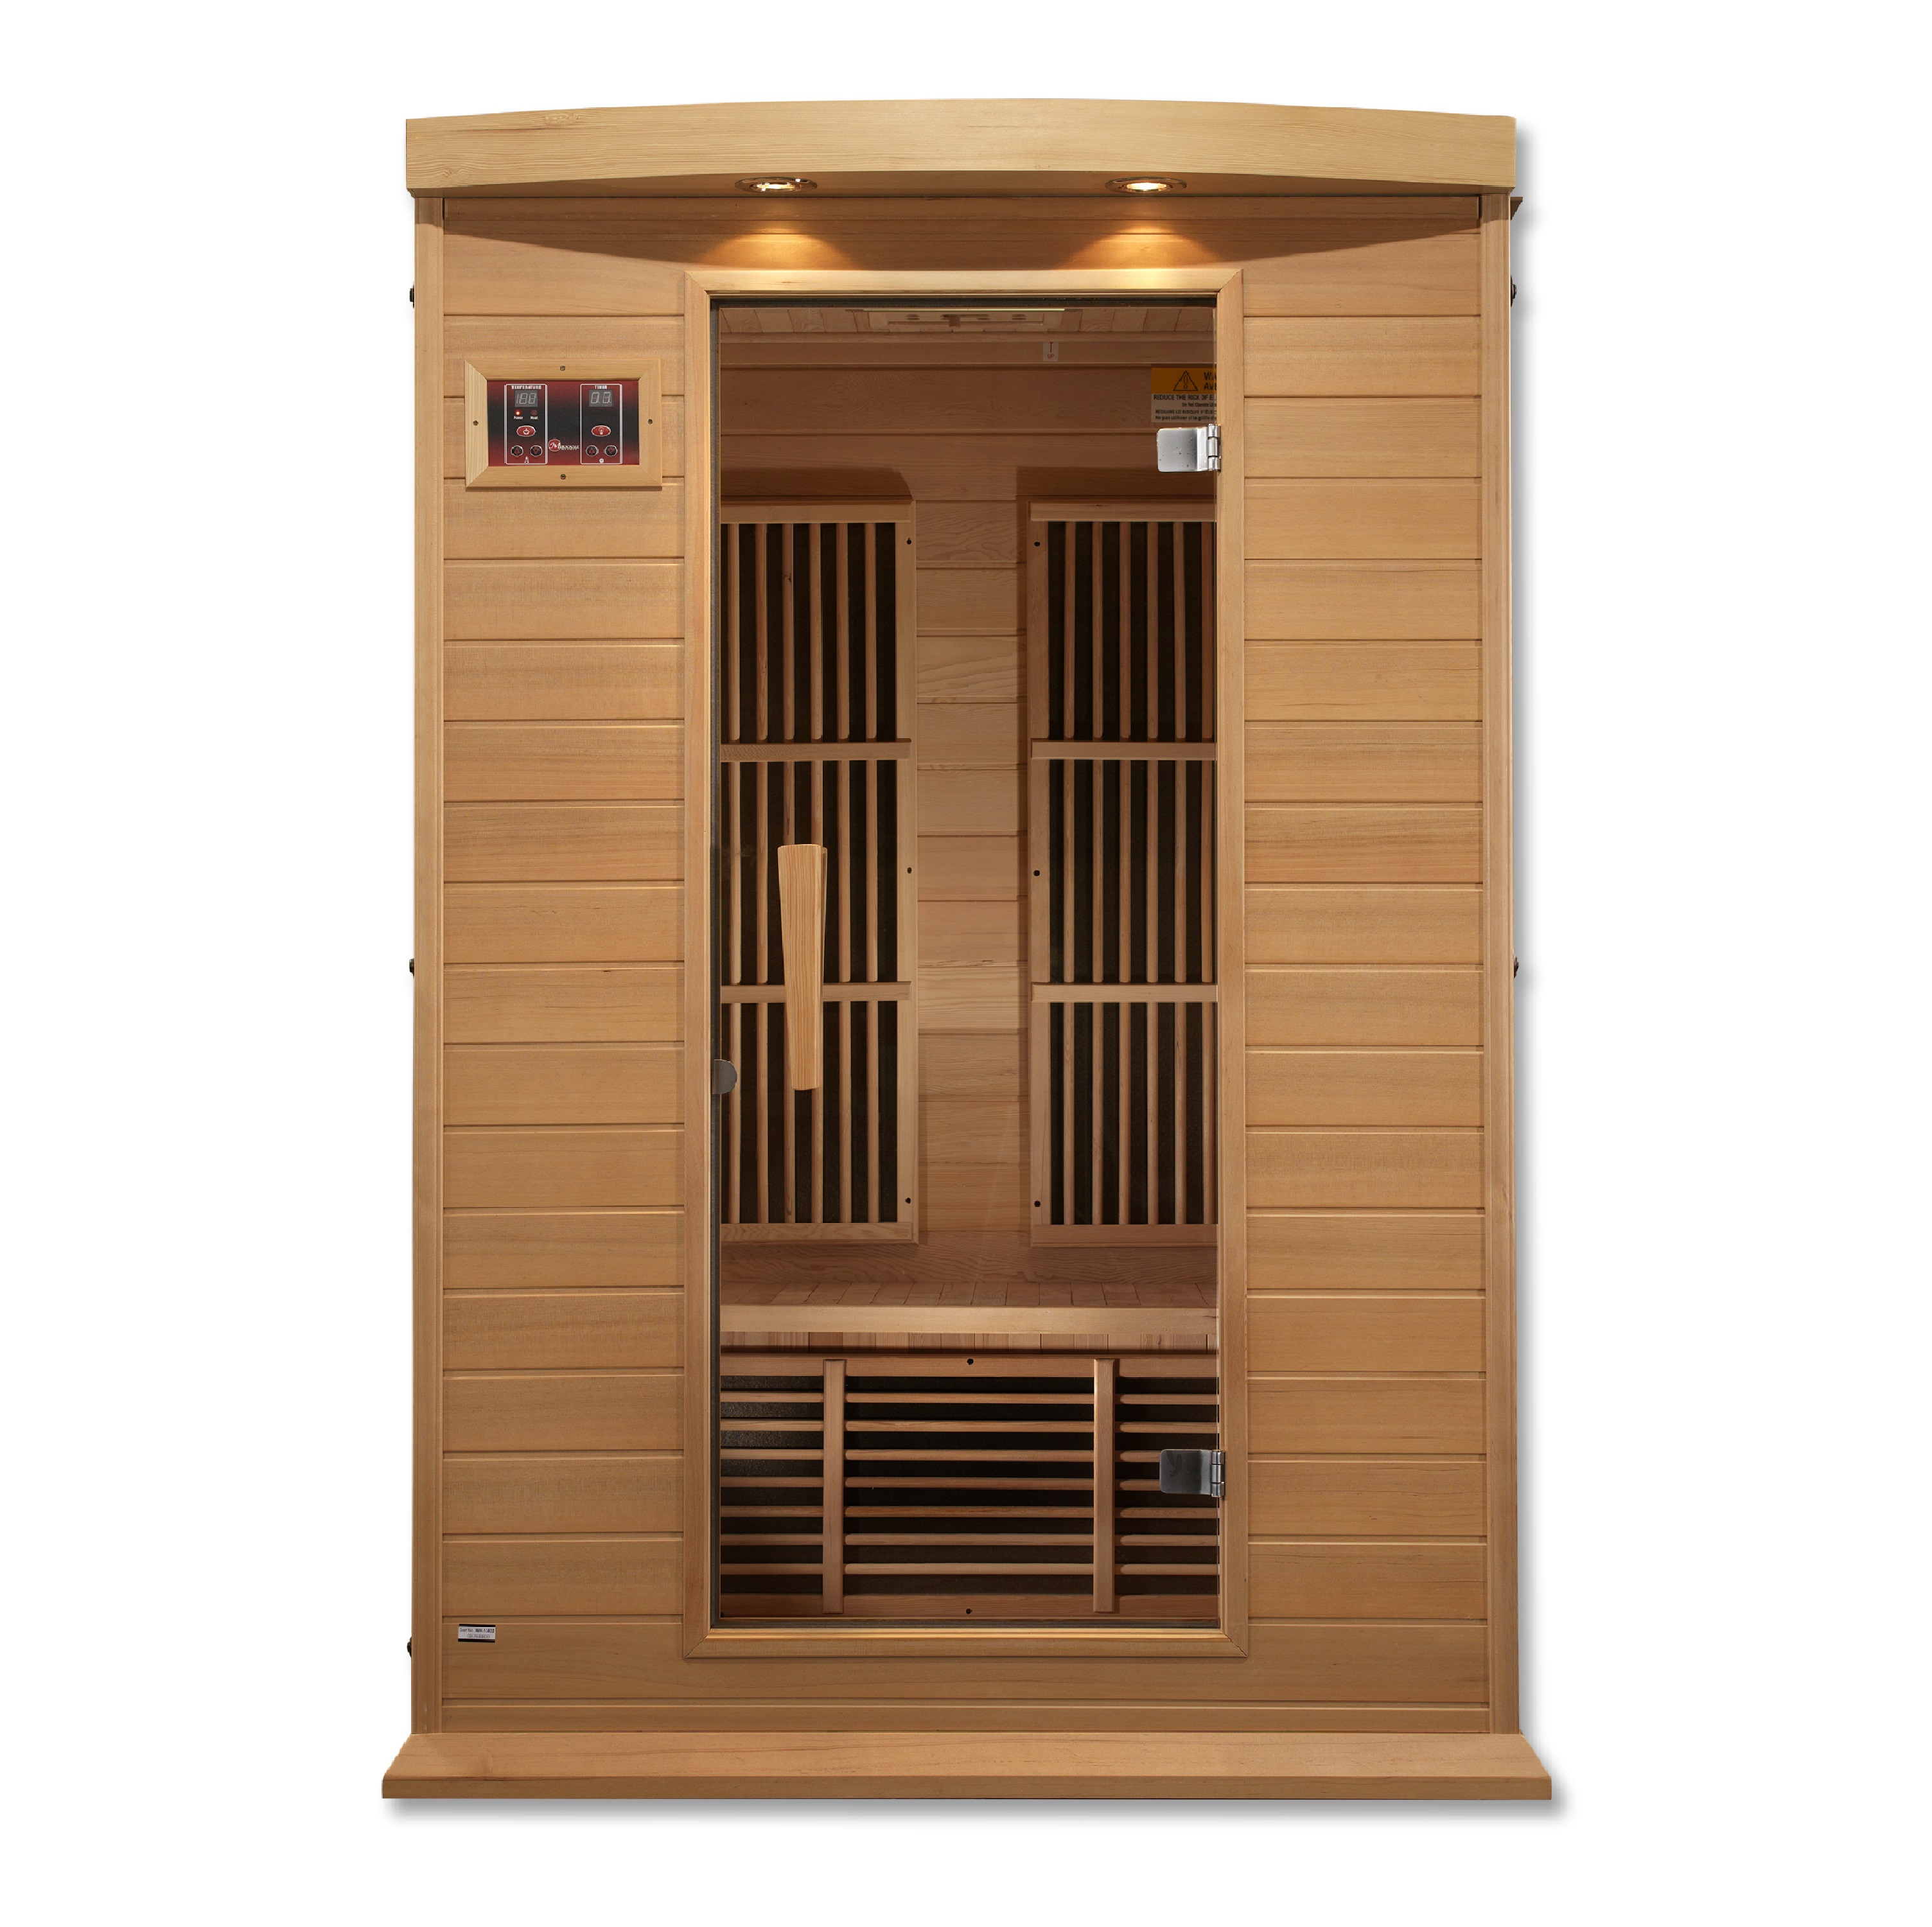 Vega 2 Low EMF Far Infrared Sauna in Hemlock | Celebration Saunas™ Infrared Saunas - Best Quality Home Saunas